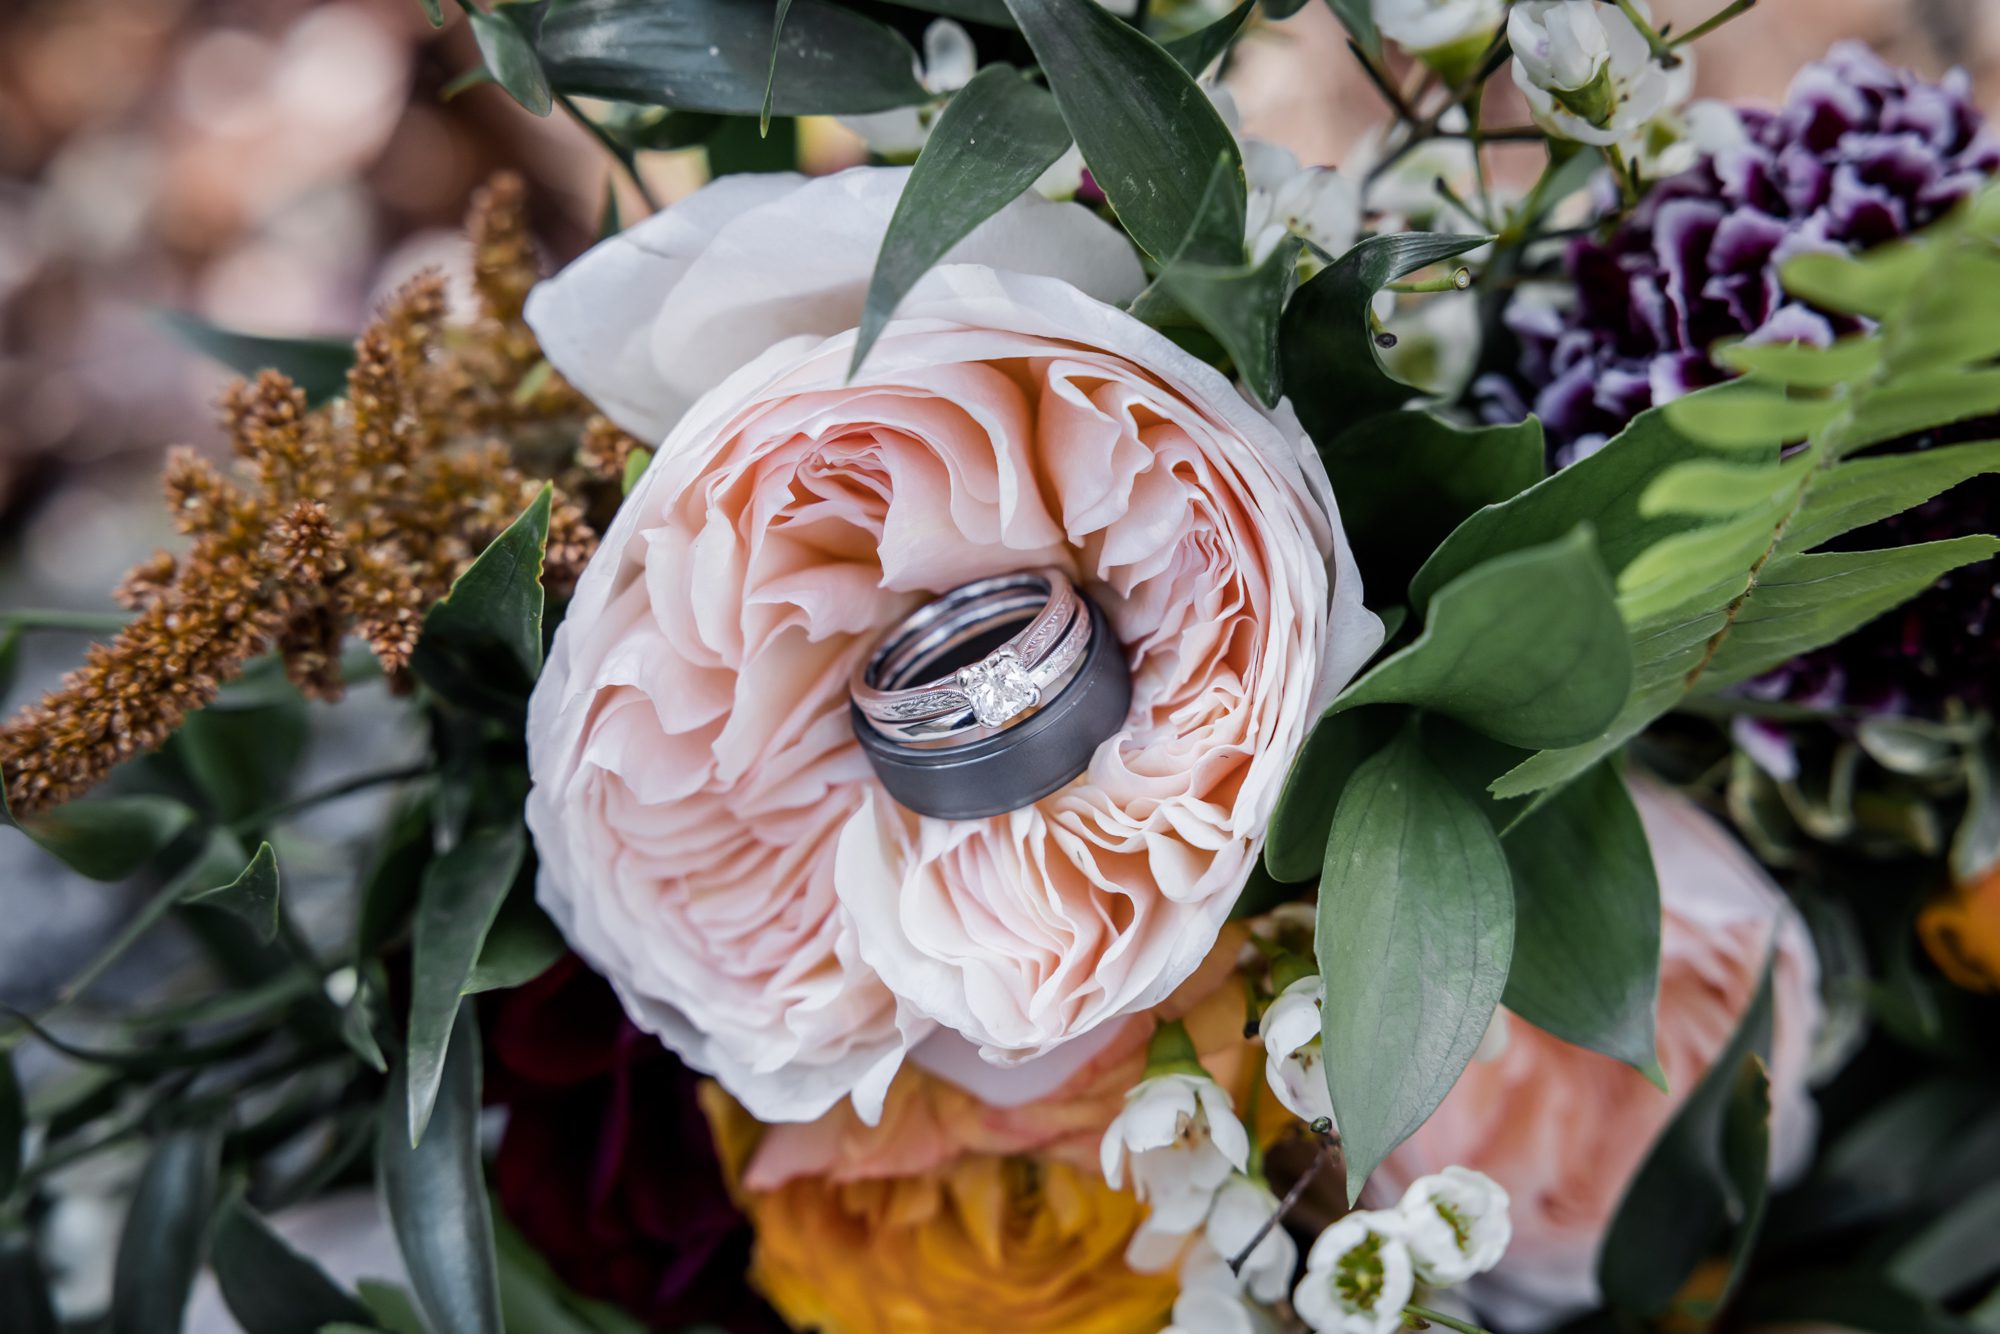 Wedding Rings in Bouquet